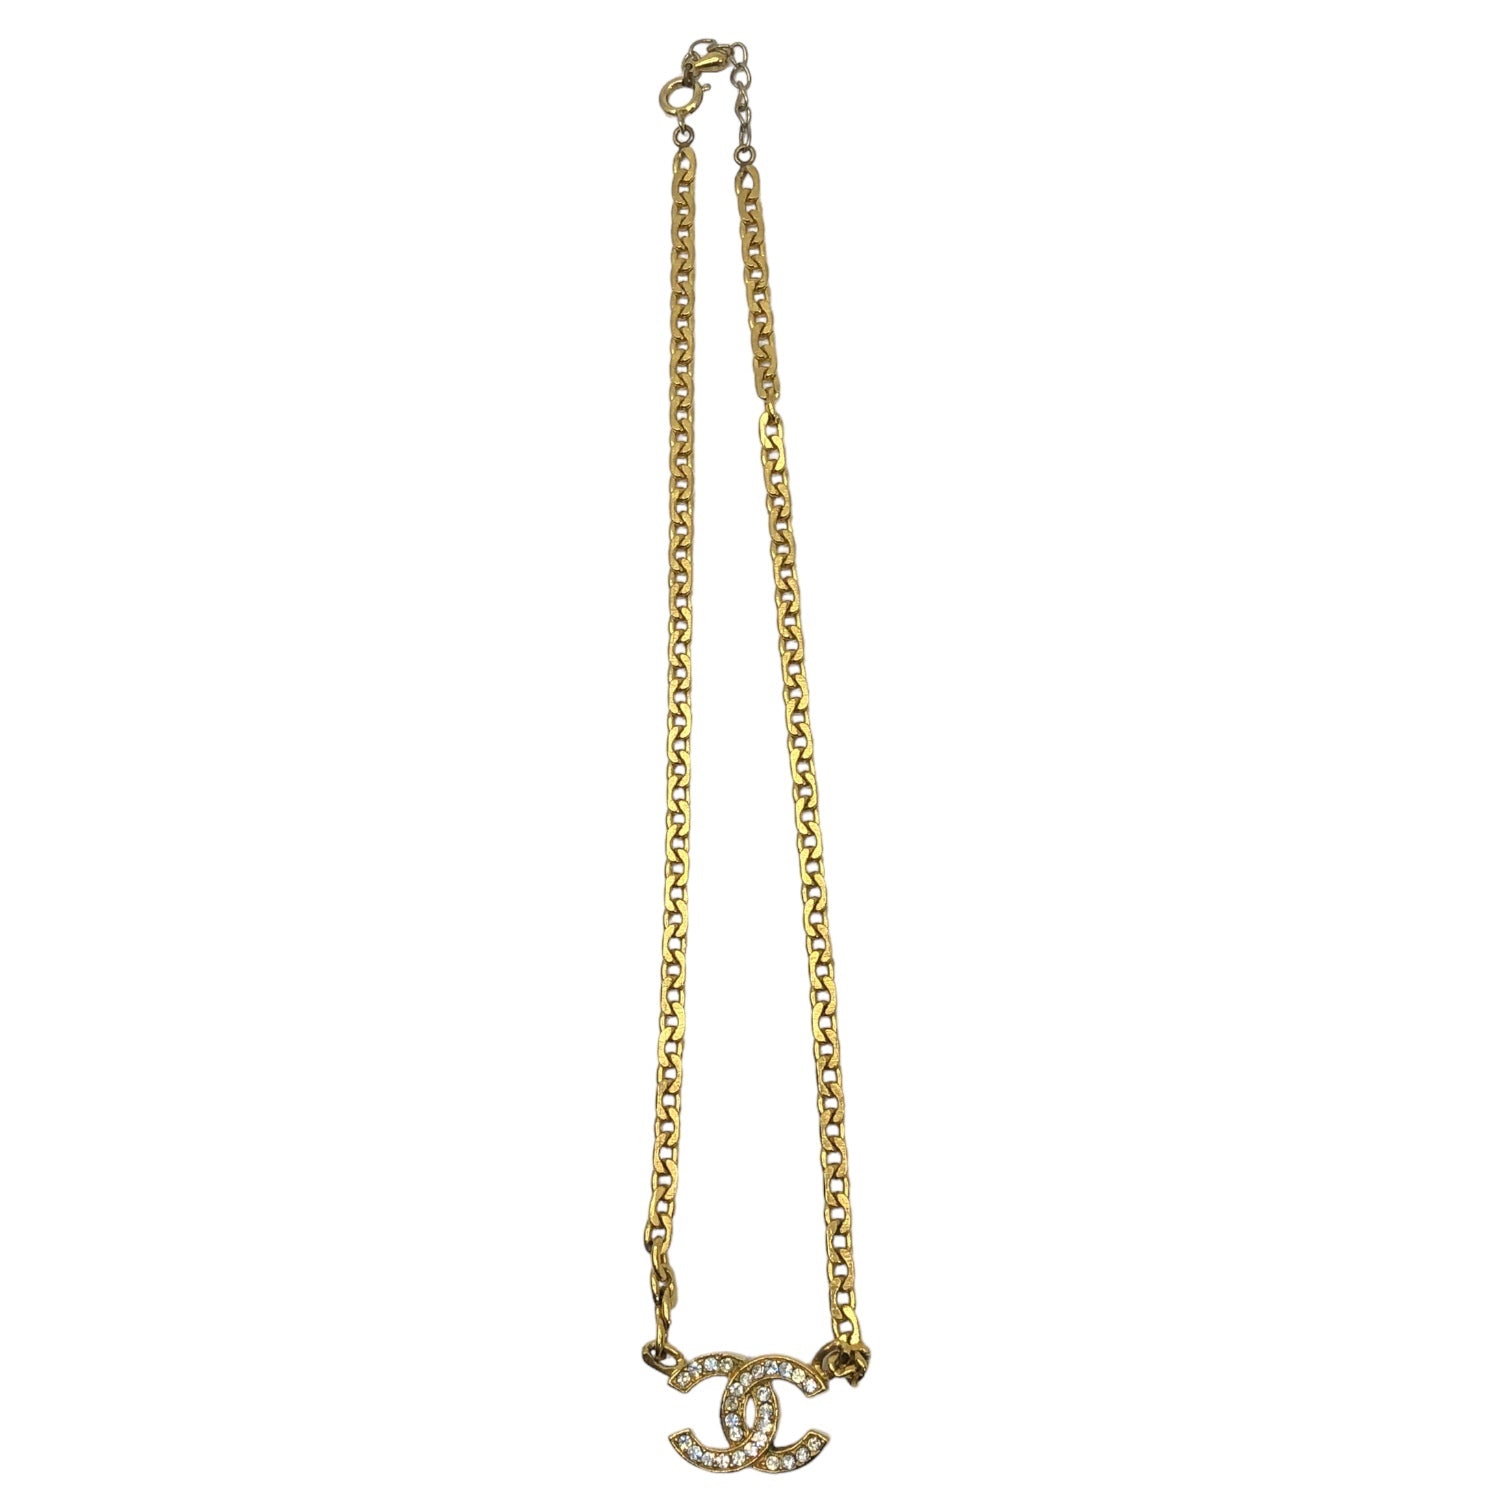 CHANEL(シャネル) 70's coco mark rhinestone chain necklace ココマーク ラインストーン チェーン ネックレス ゴールド 刻印B312 70年代 ヴィンテージ ペンダント